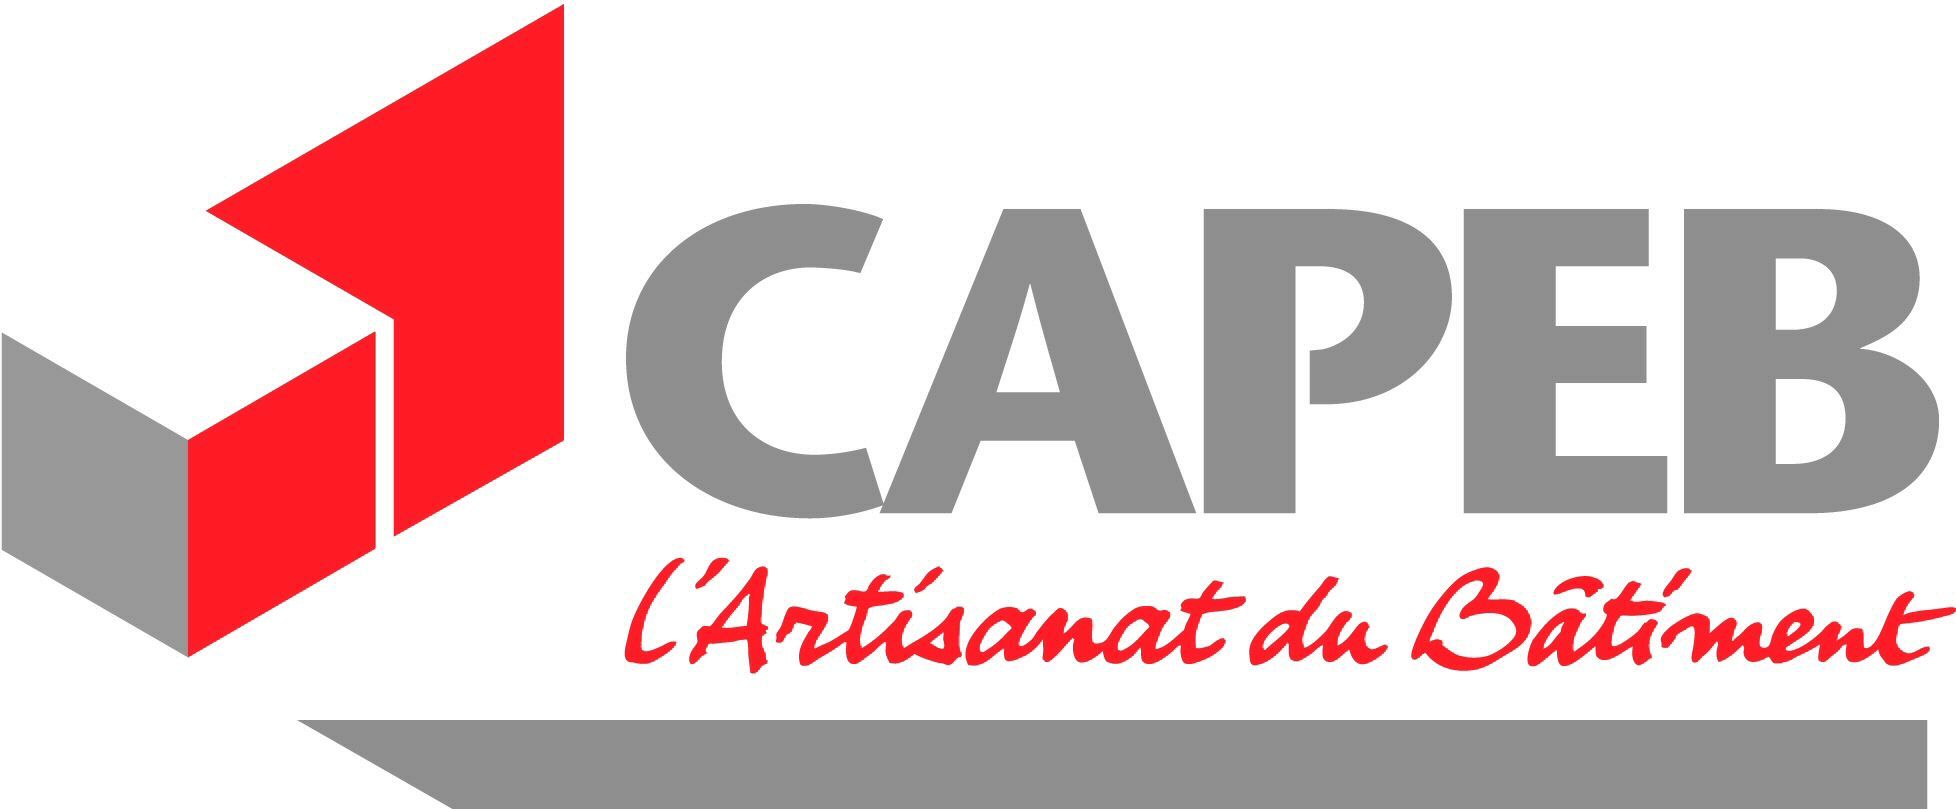 CAPEB logo